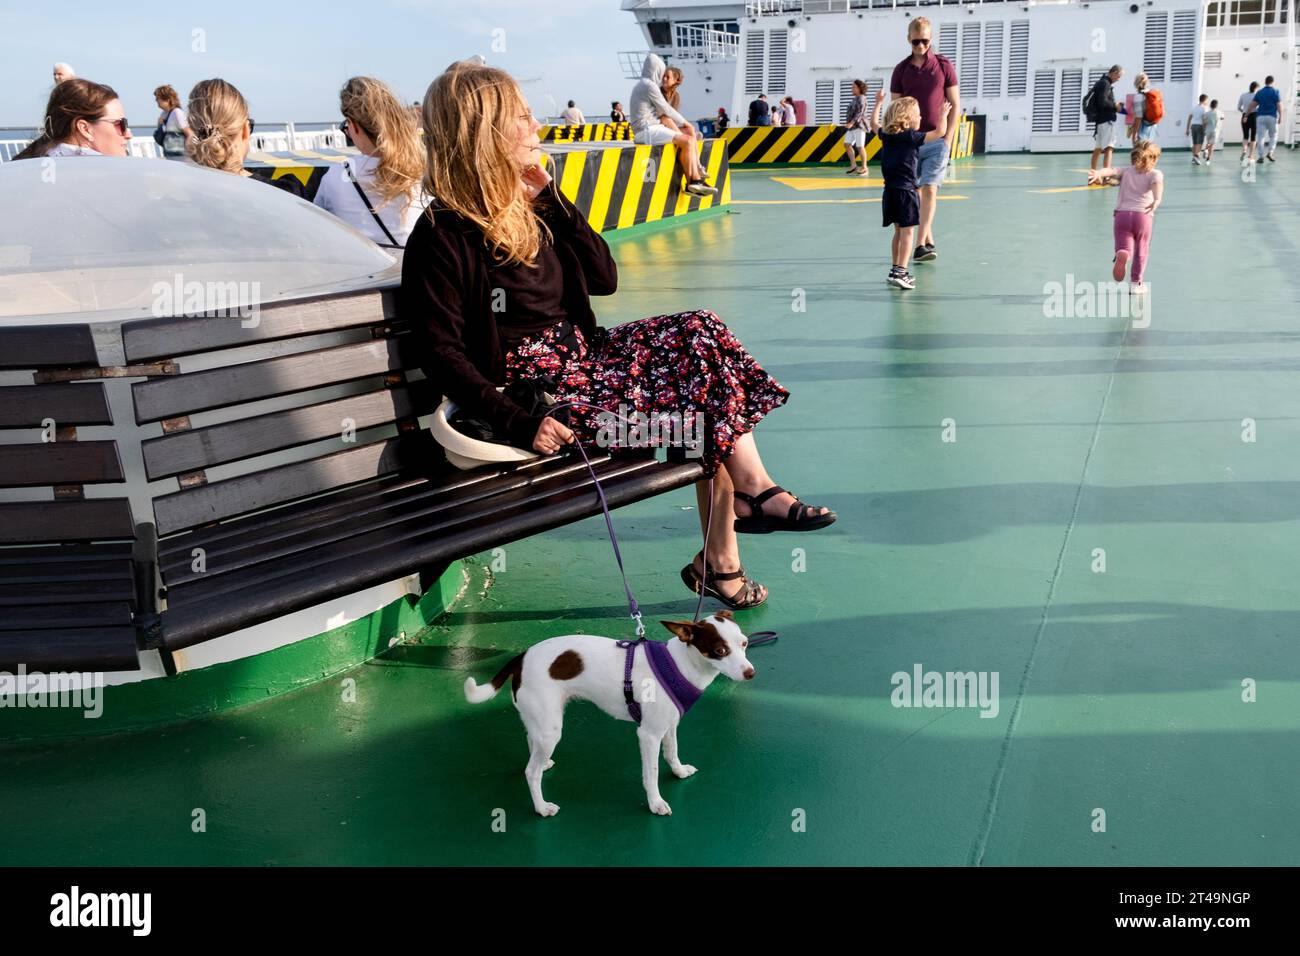 Eine Frau saß mit ihrem Hund an Deck auf einer geschäftigen Ostseekreuzfahrt zwischen Helsinki in Finnland, Åland und Stockholm in Schweden. Foto: Rob Watkins Stockfoto